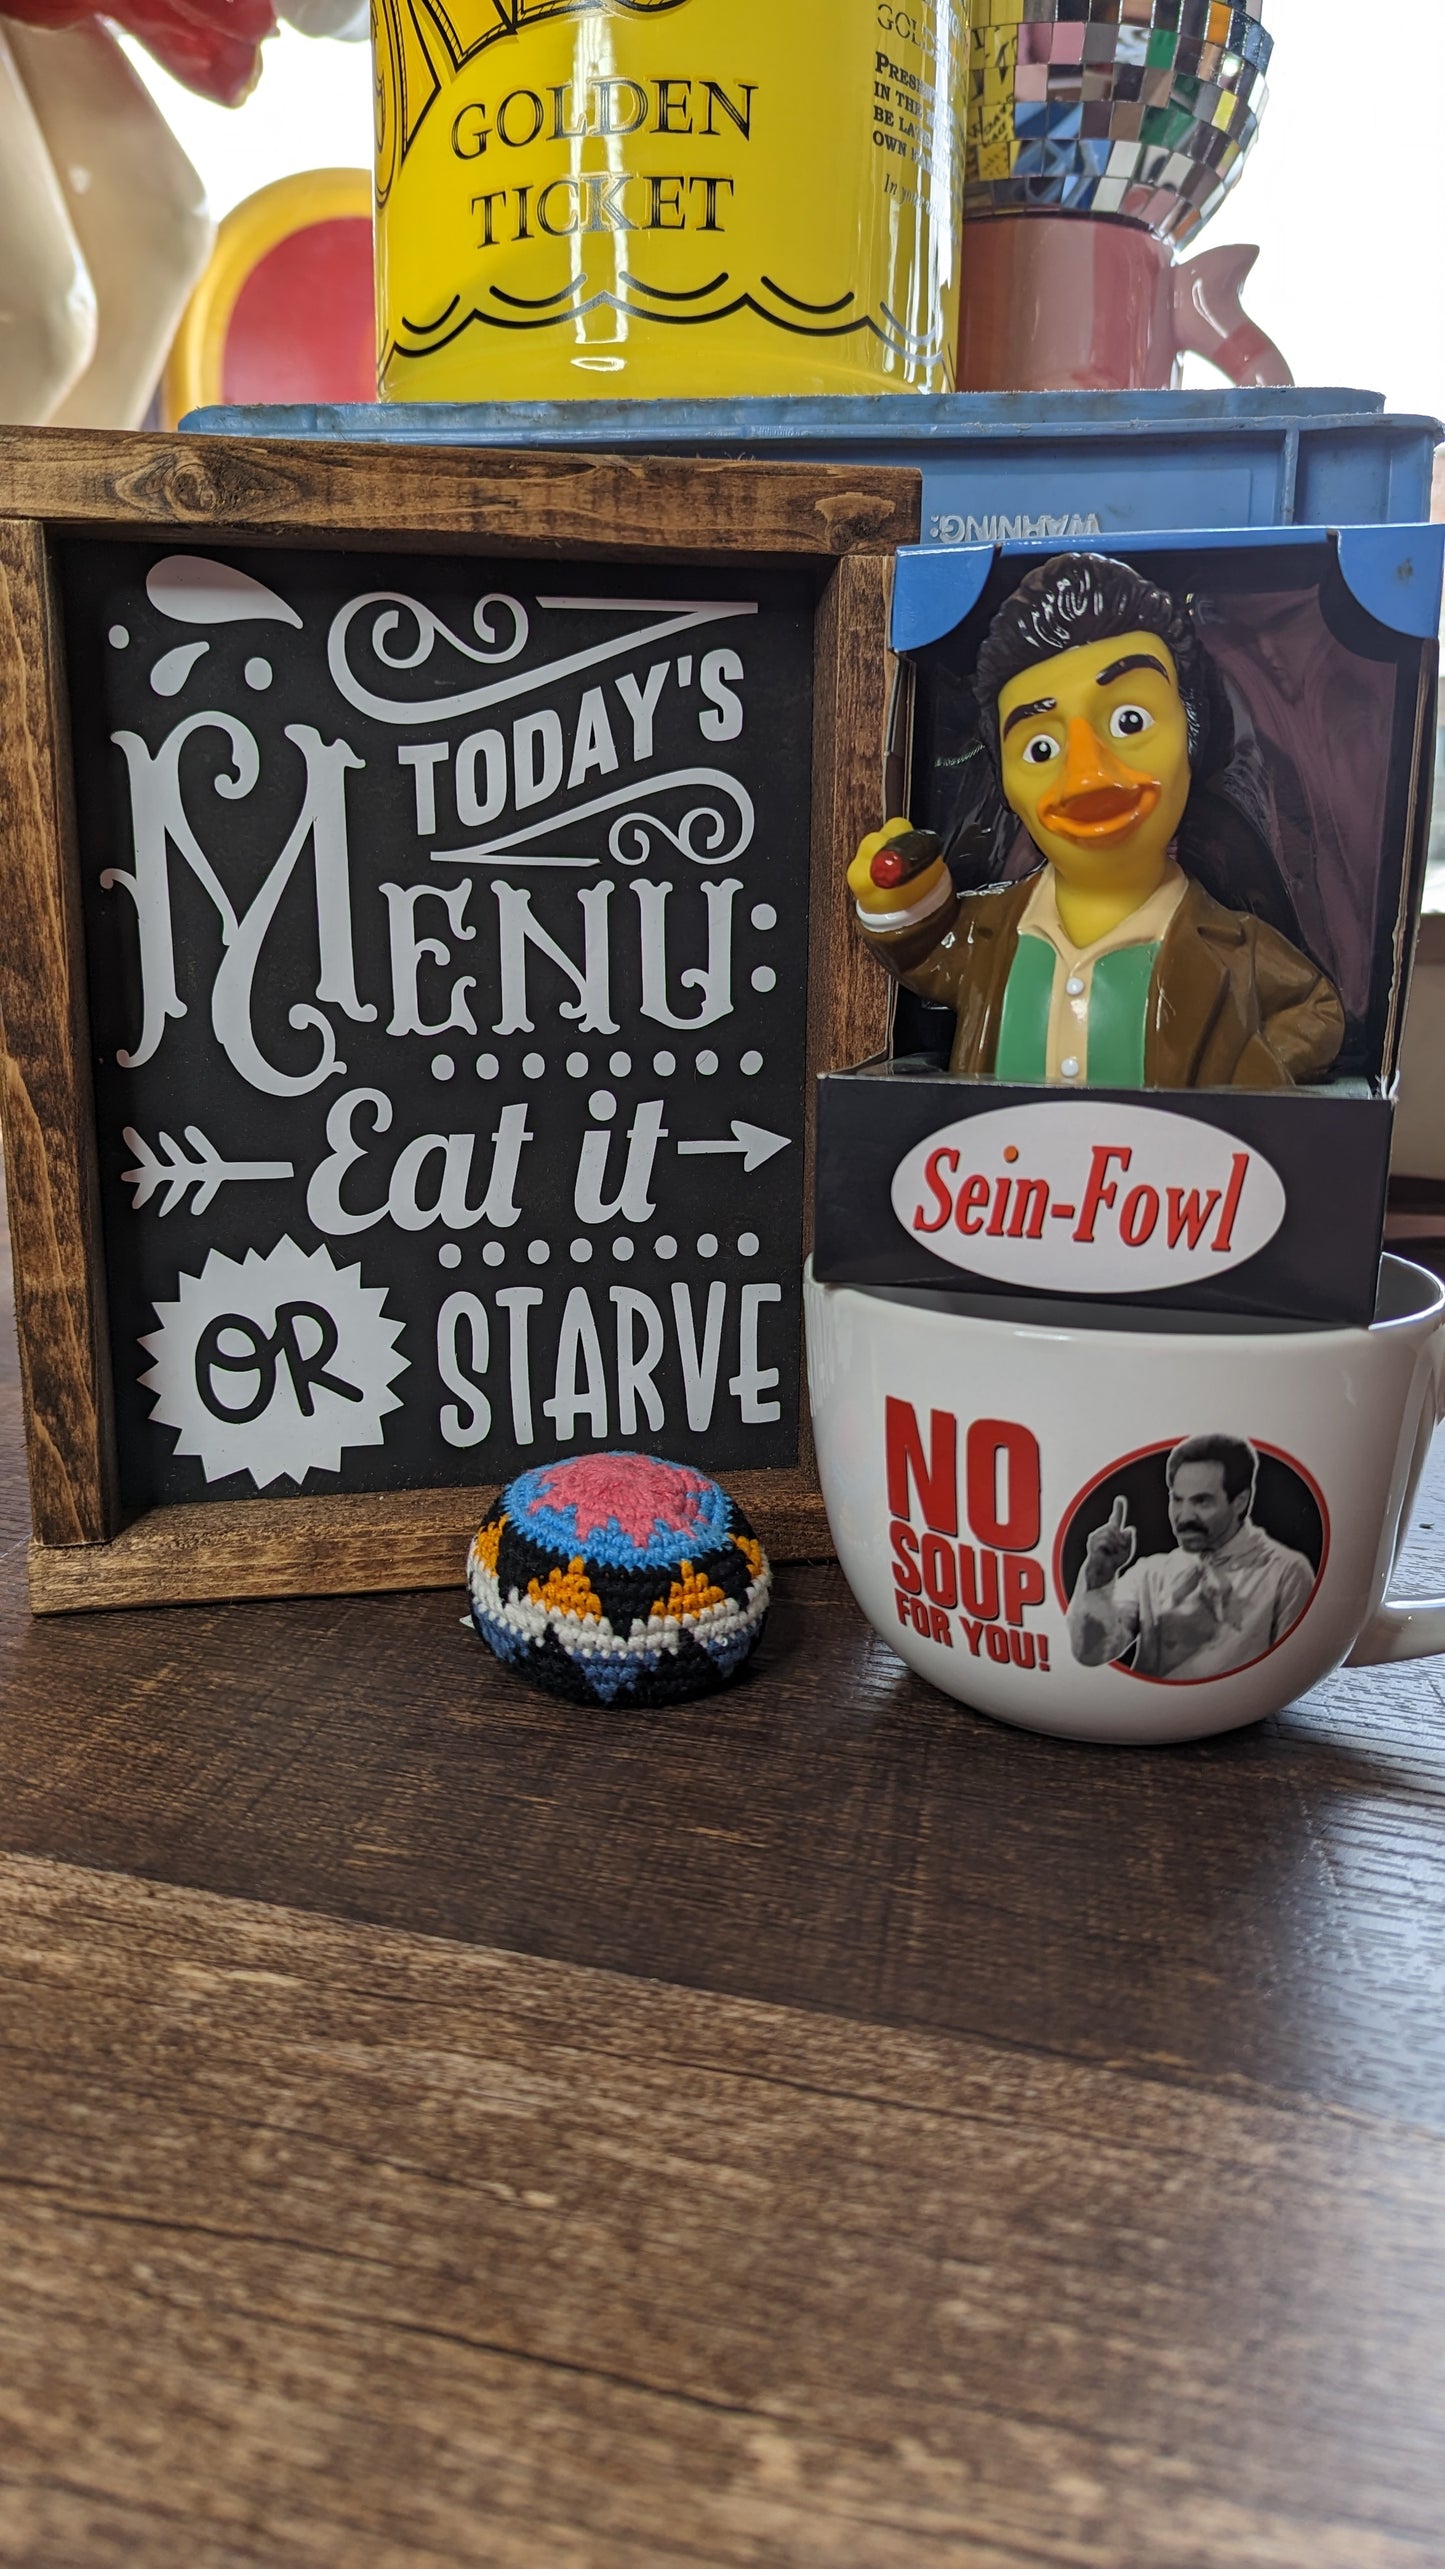 Seinfeld No Soup For You  24oz Ceramic Soup Mug